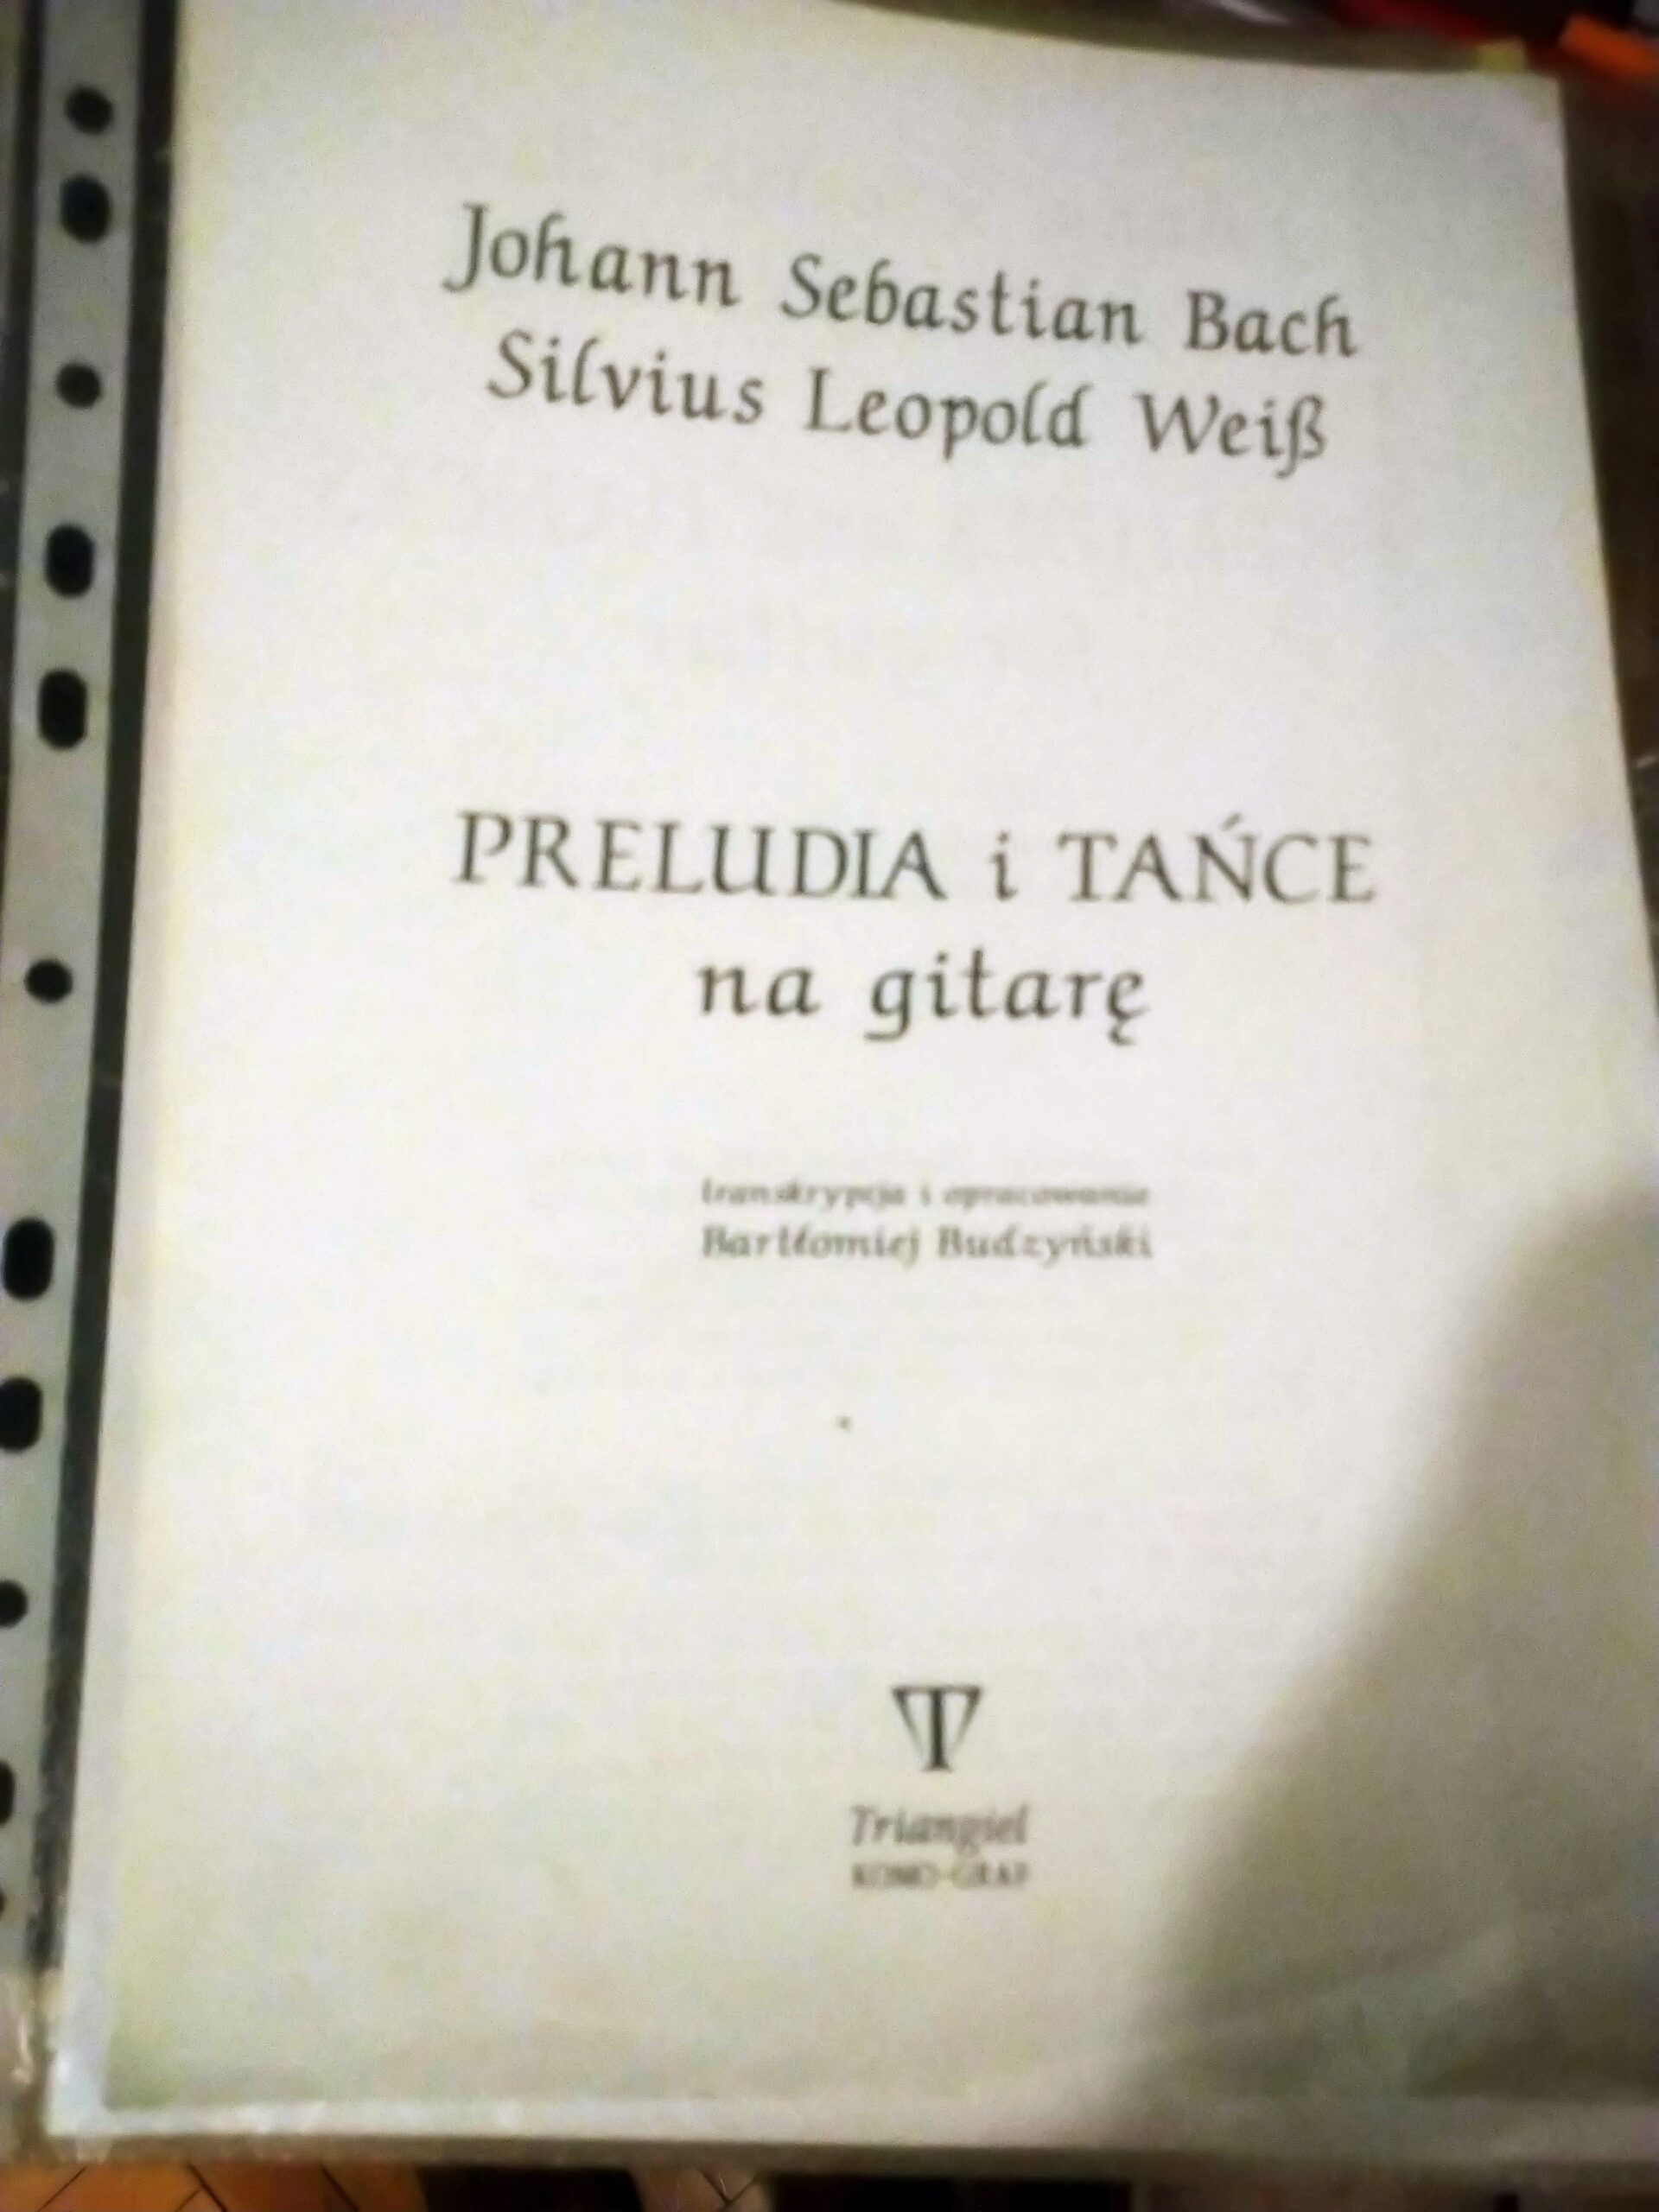 Bartłomiej Budzyński - transcr.J.S.Bach